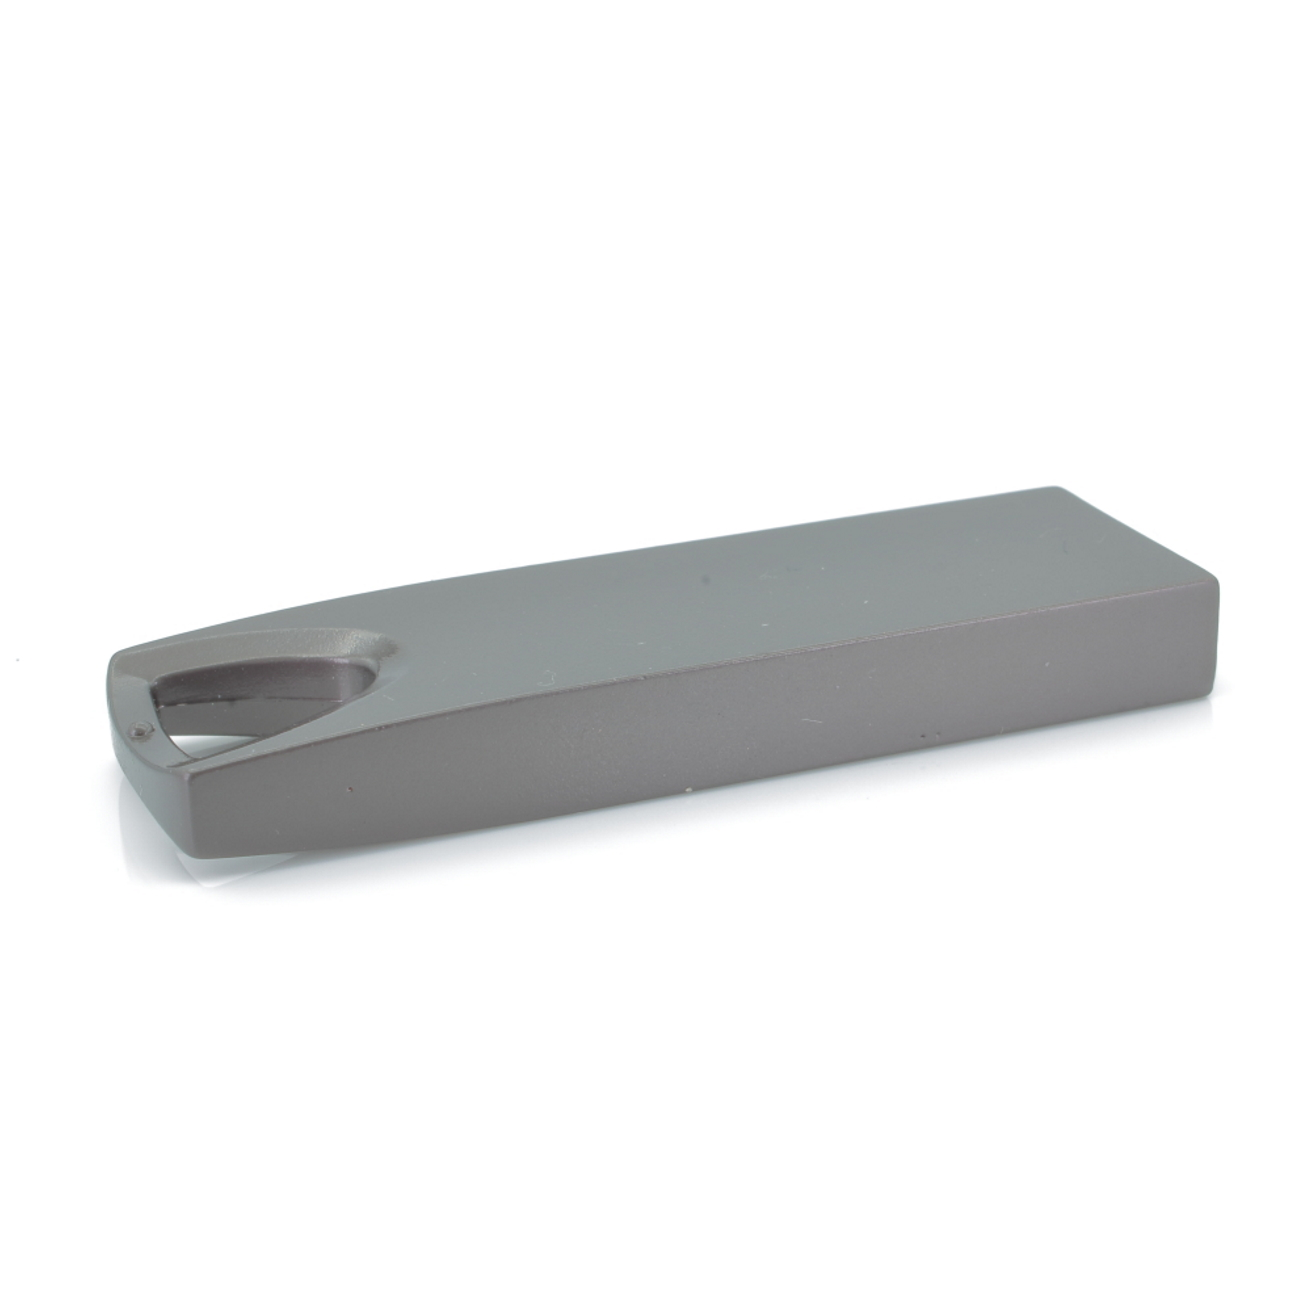 4 GB) SE13 (Graumetalic, GERMANY USB-Stick ®Metall USB